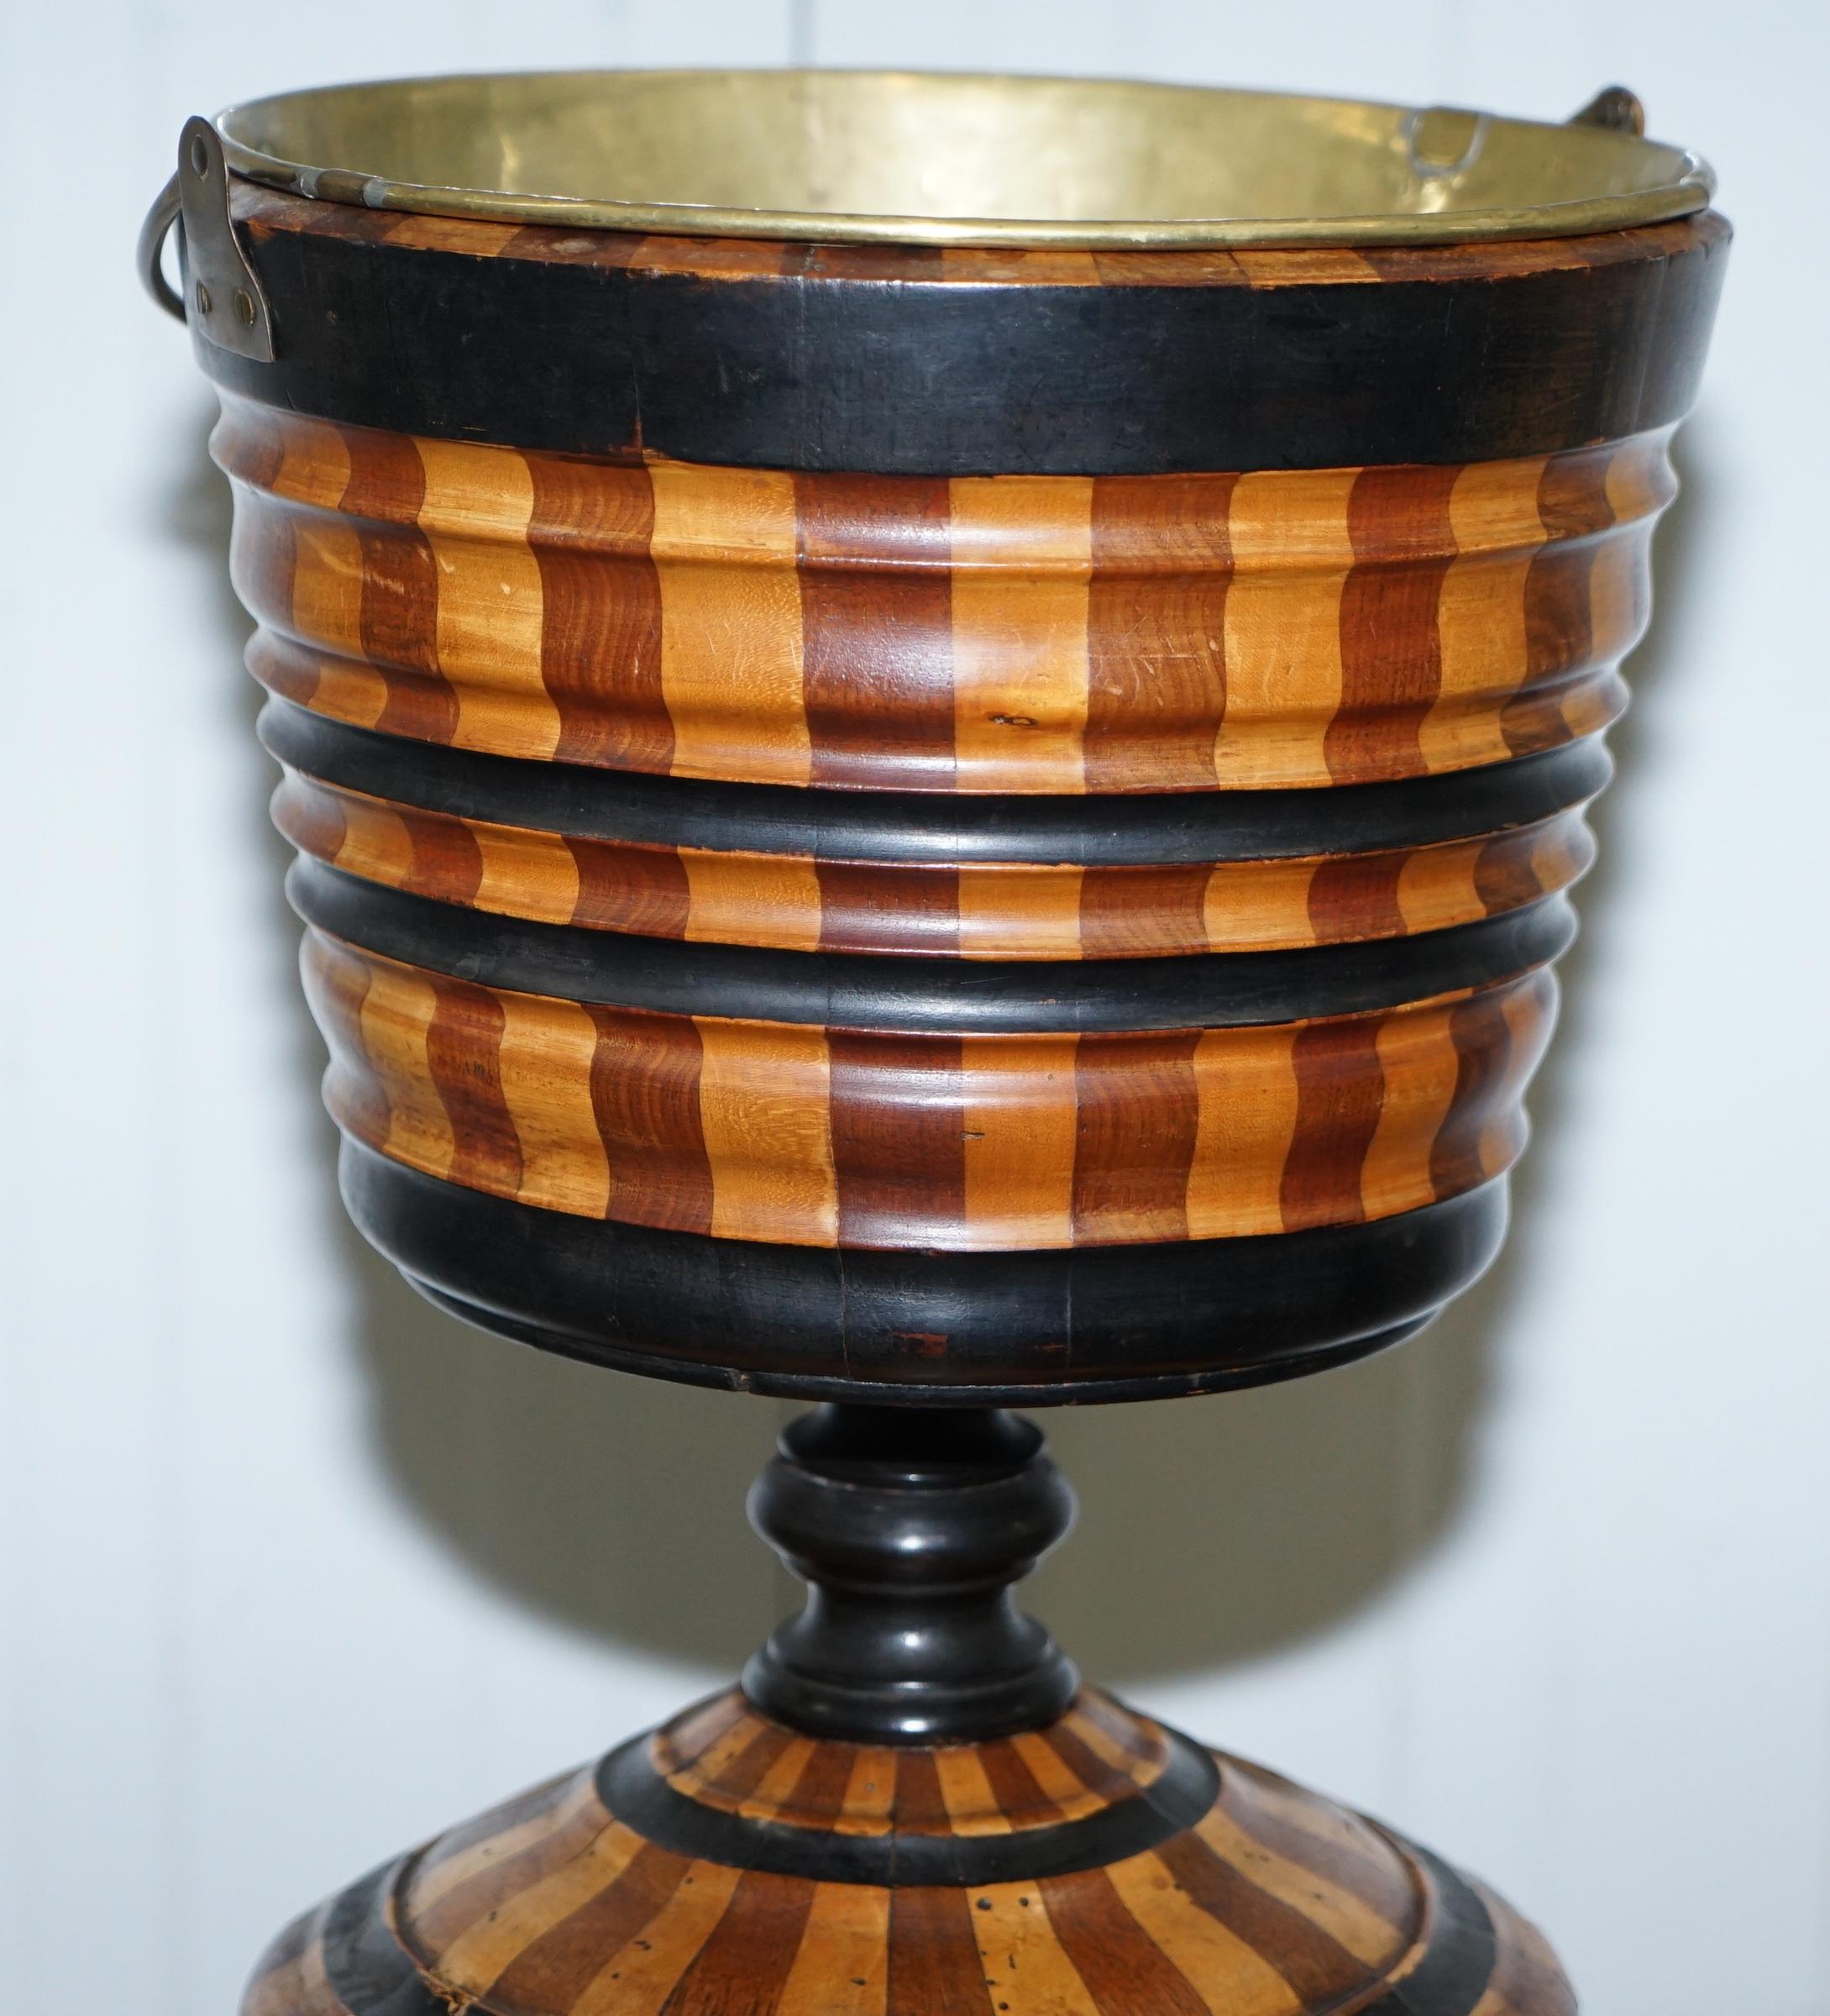 19th Century Maple & Ebony Biedermeier Peat Bucket for Coal Brass Lined Great Bin Planter